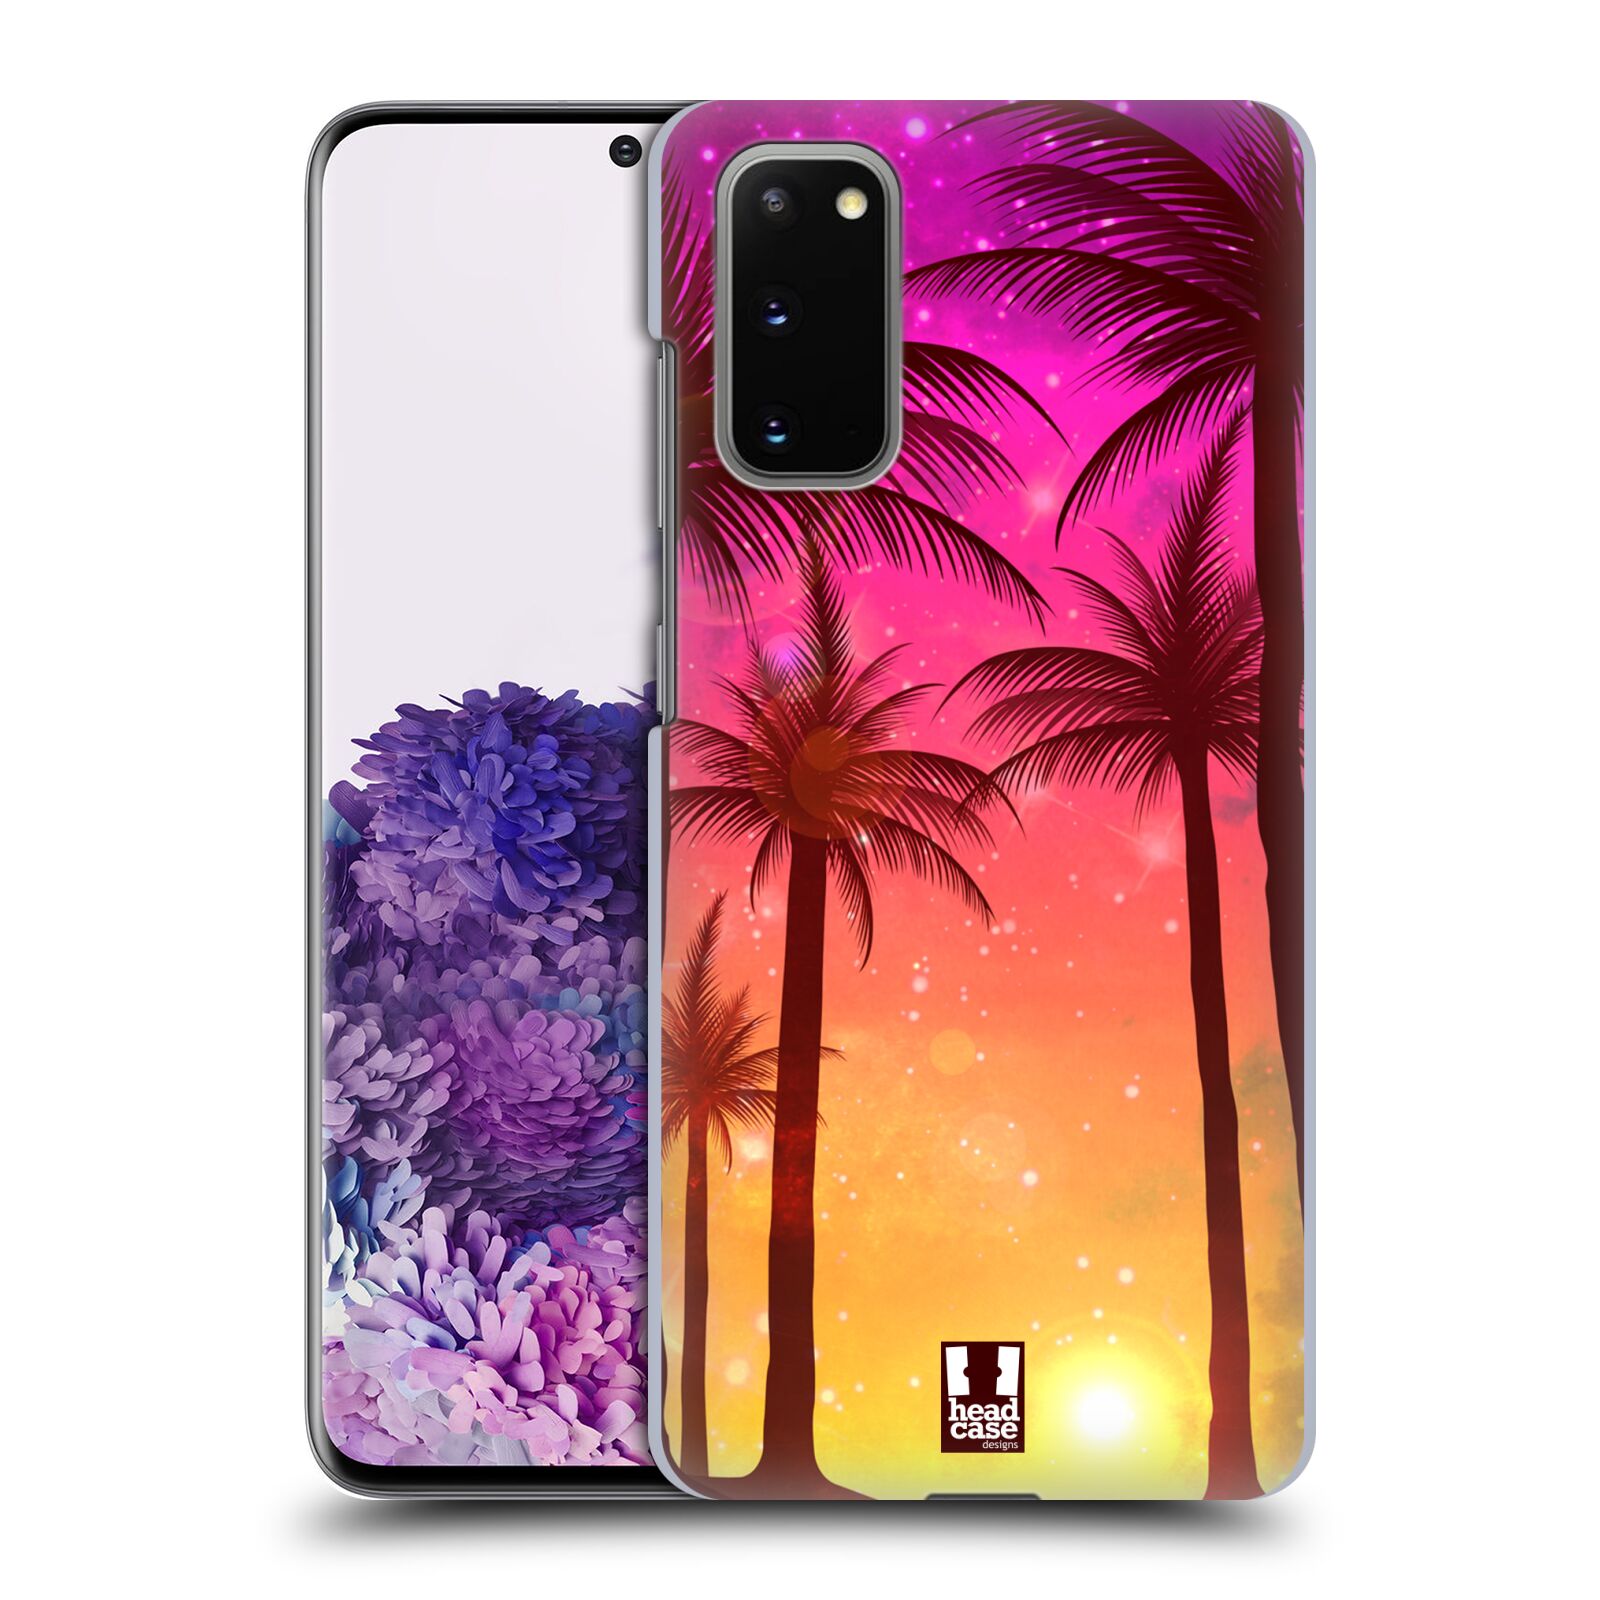 Pouzdro na mobil Samsung Galaxy S20 - HEAD CASE - vzor Kreslený motiv silueta moře a palmy RŮŽOVÁ